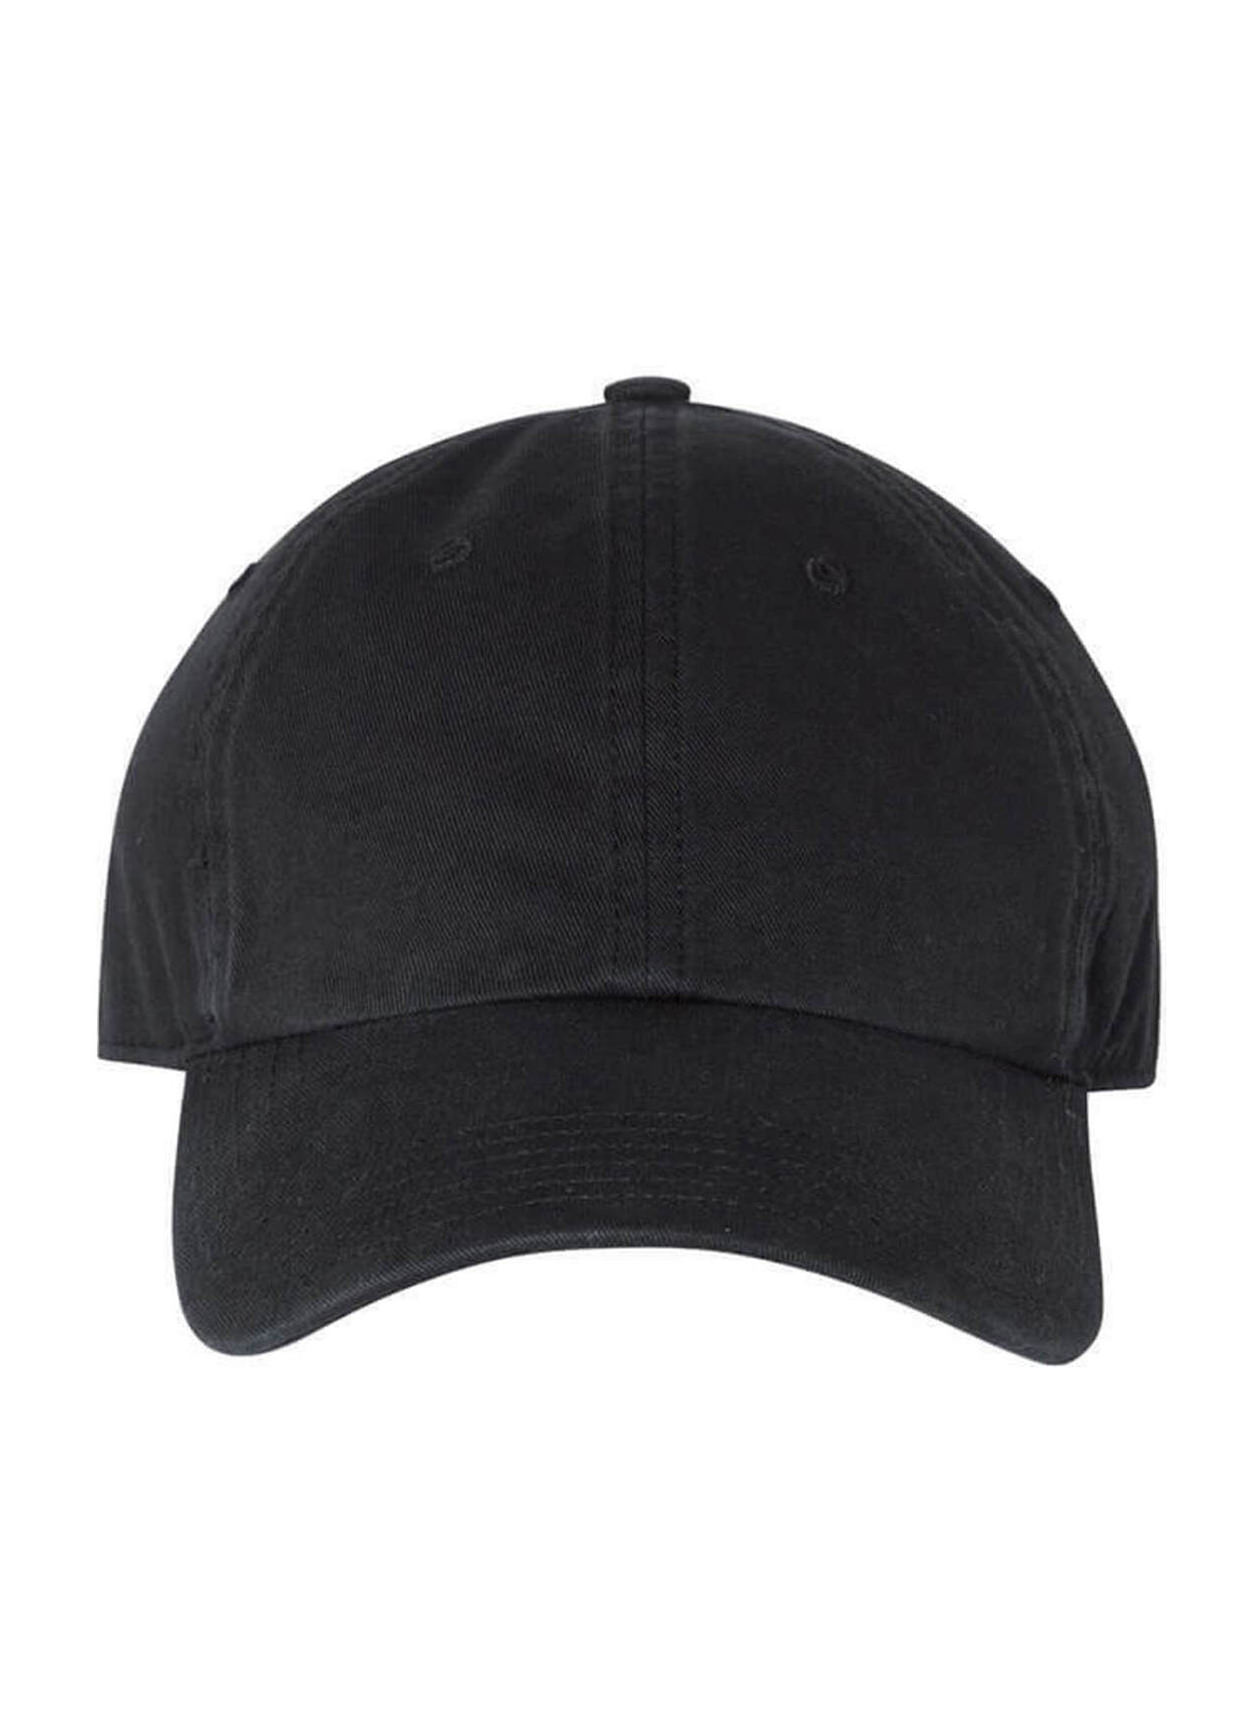 Richardson Black Washed Chino Hat